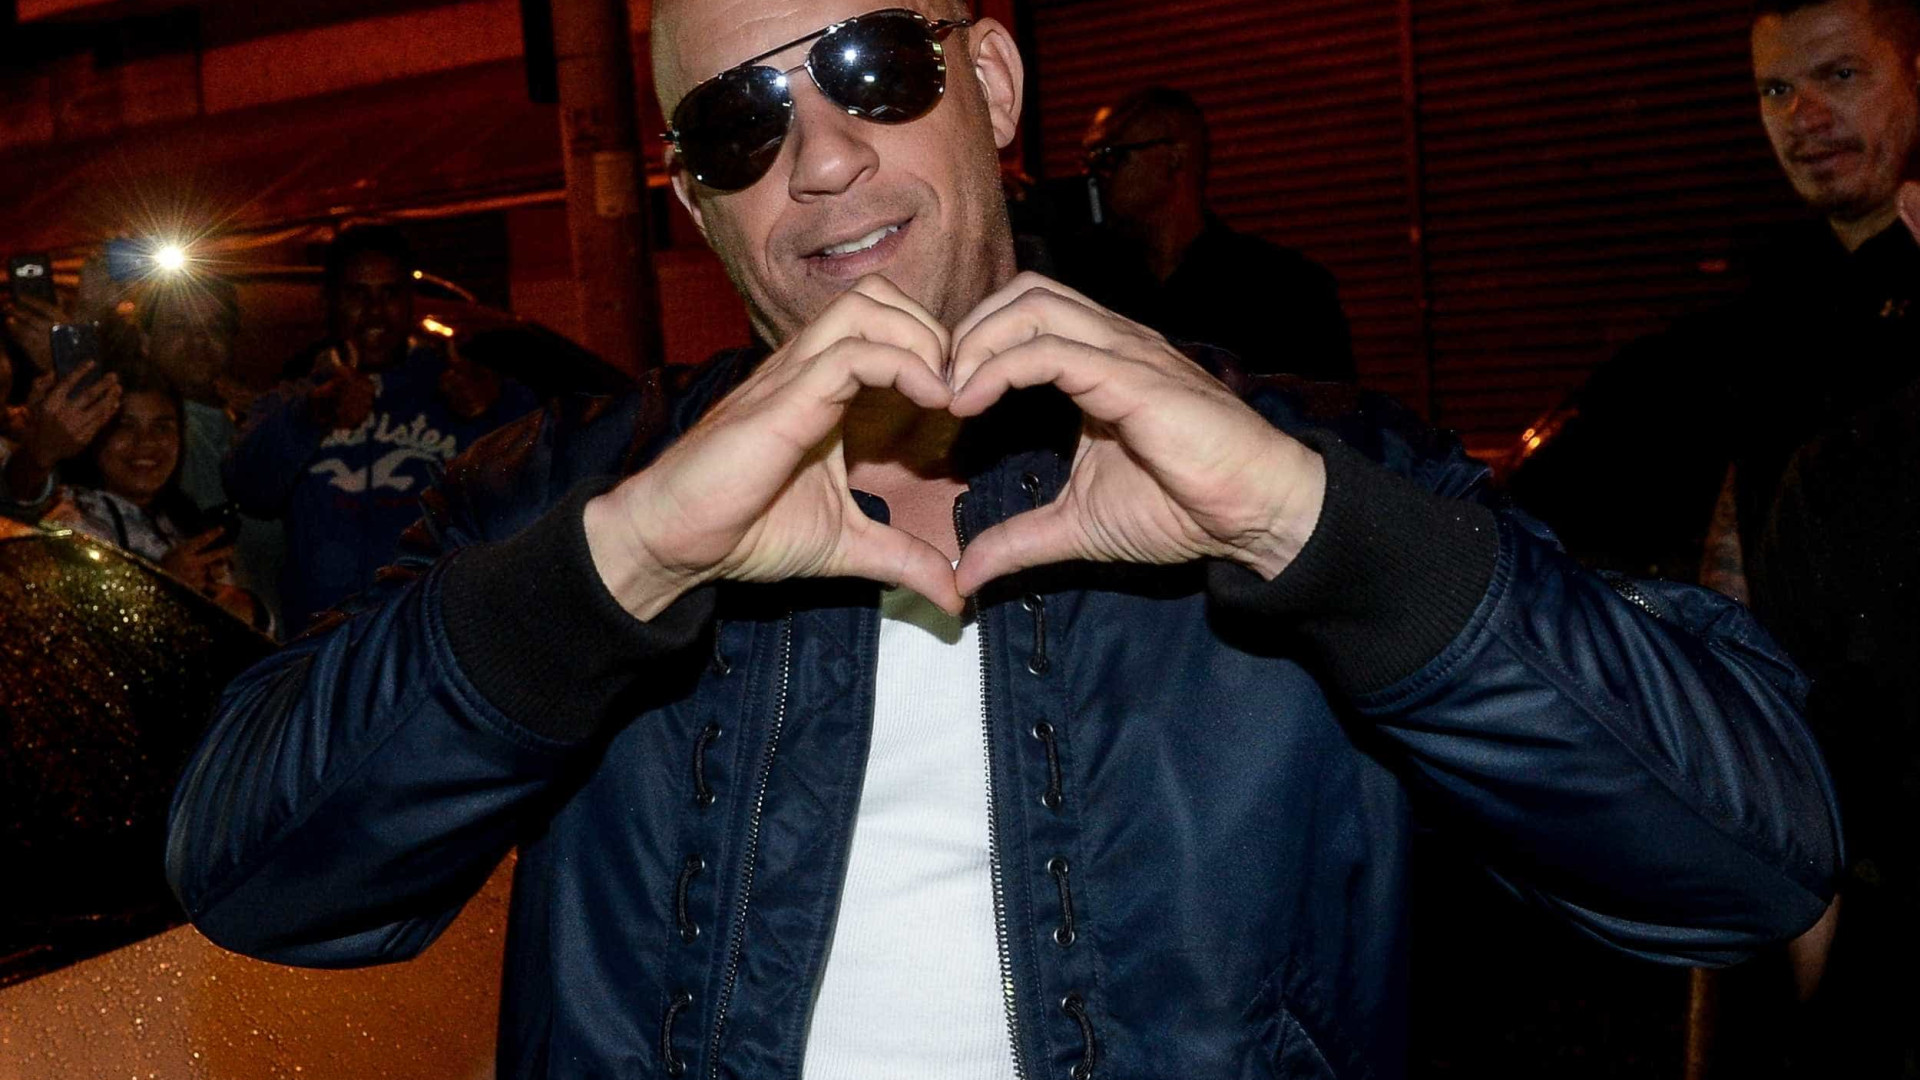 Vin Diesel chega ao Brasil e curte balada em São Paulo;
confira